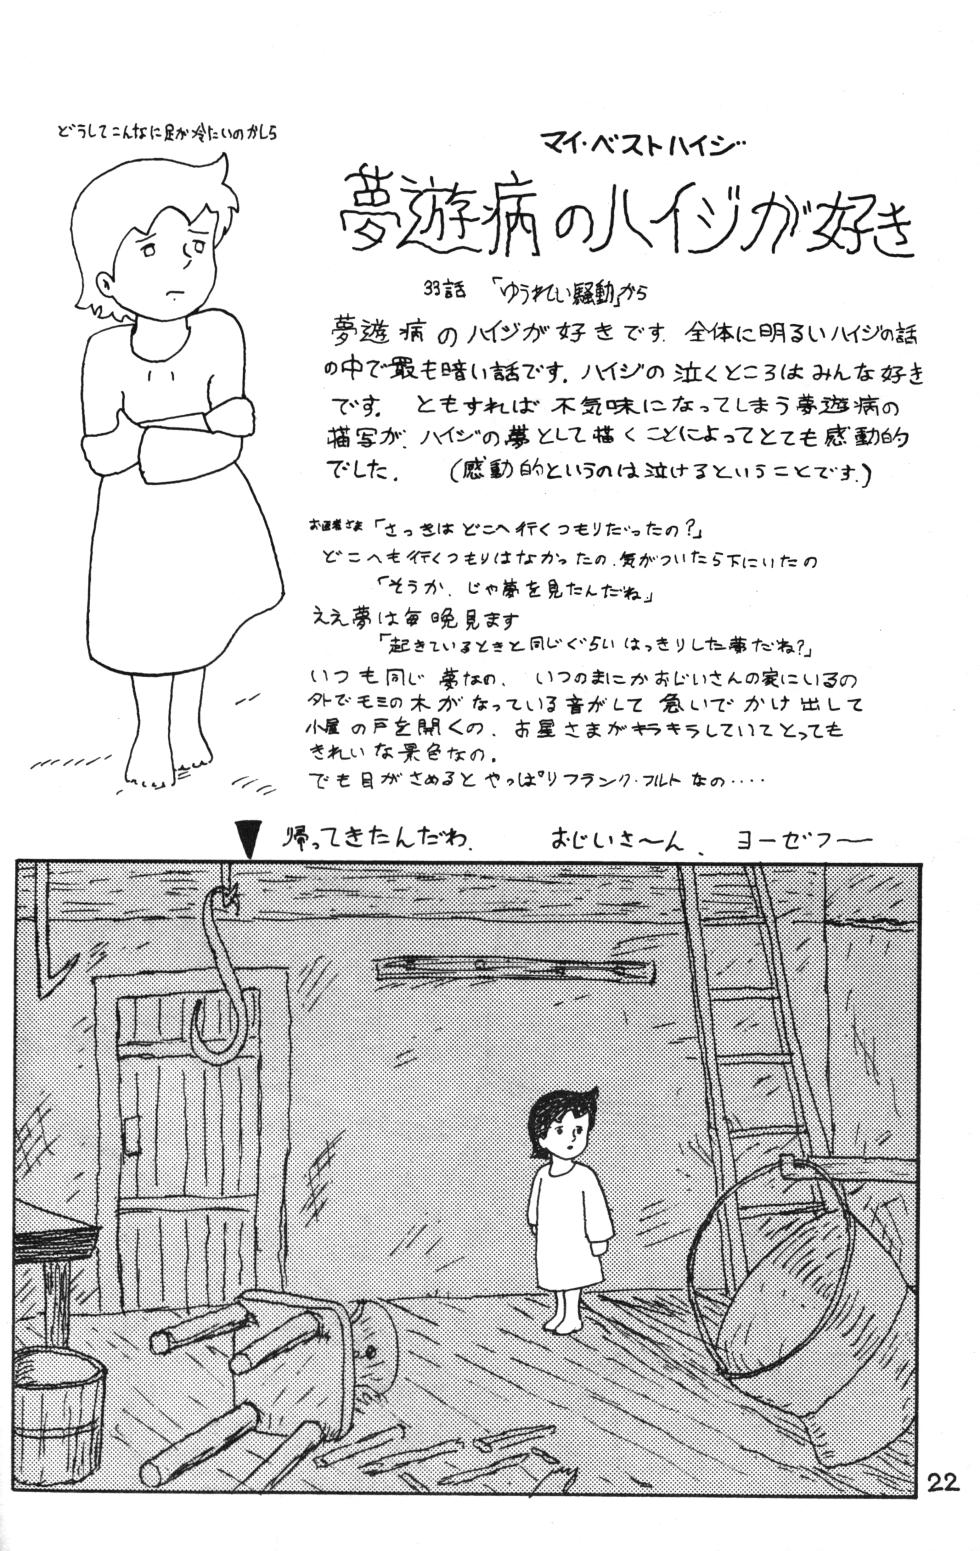 [AVC 2] Rana-chan World 3 (Alps no Shoujo Heidi) - Page 22